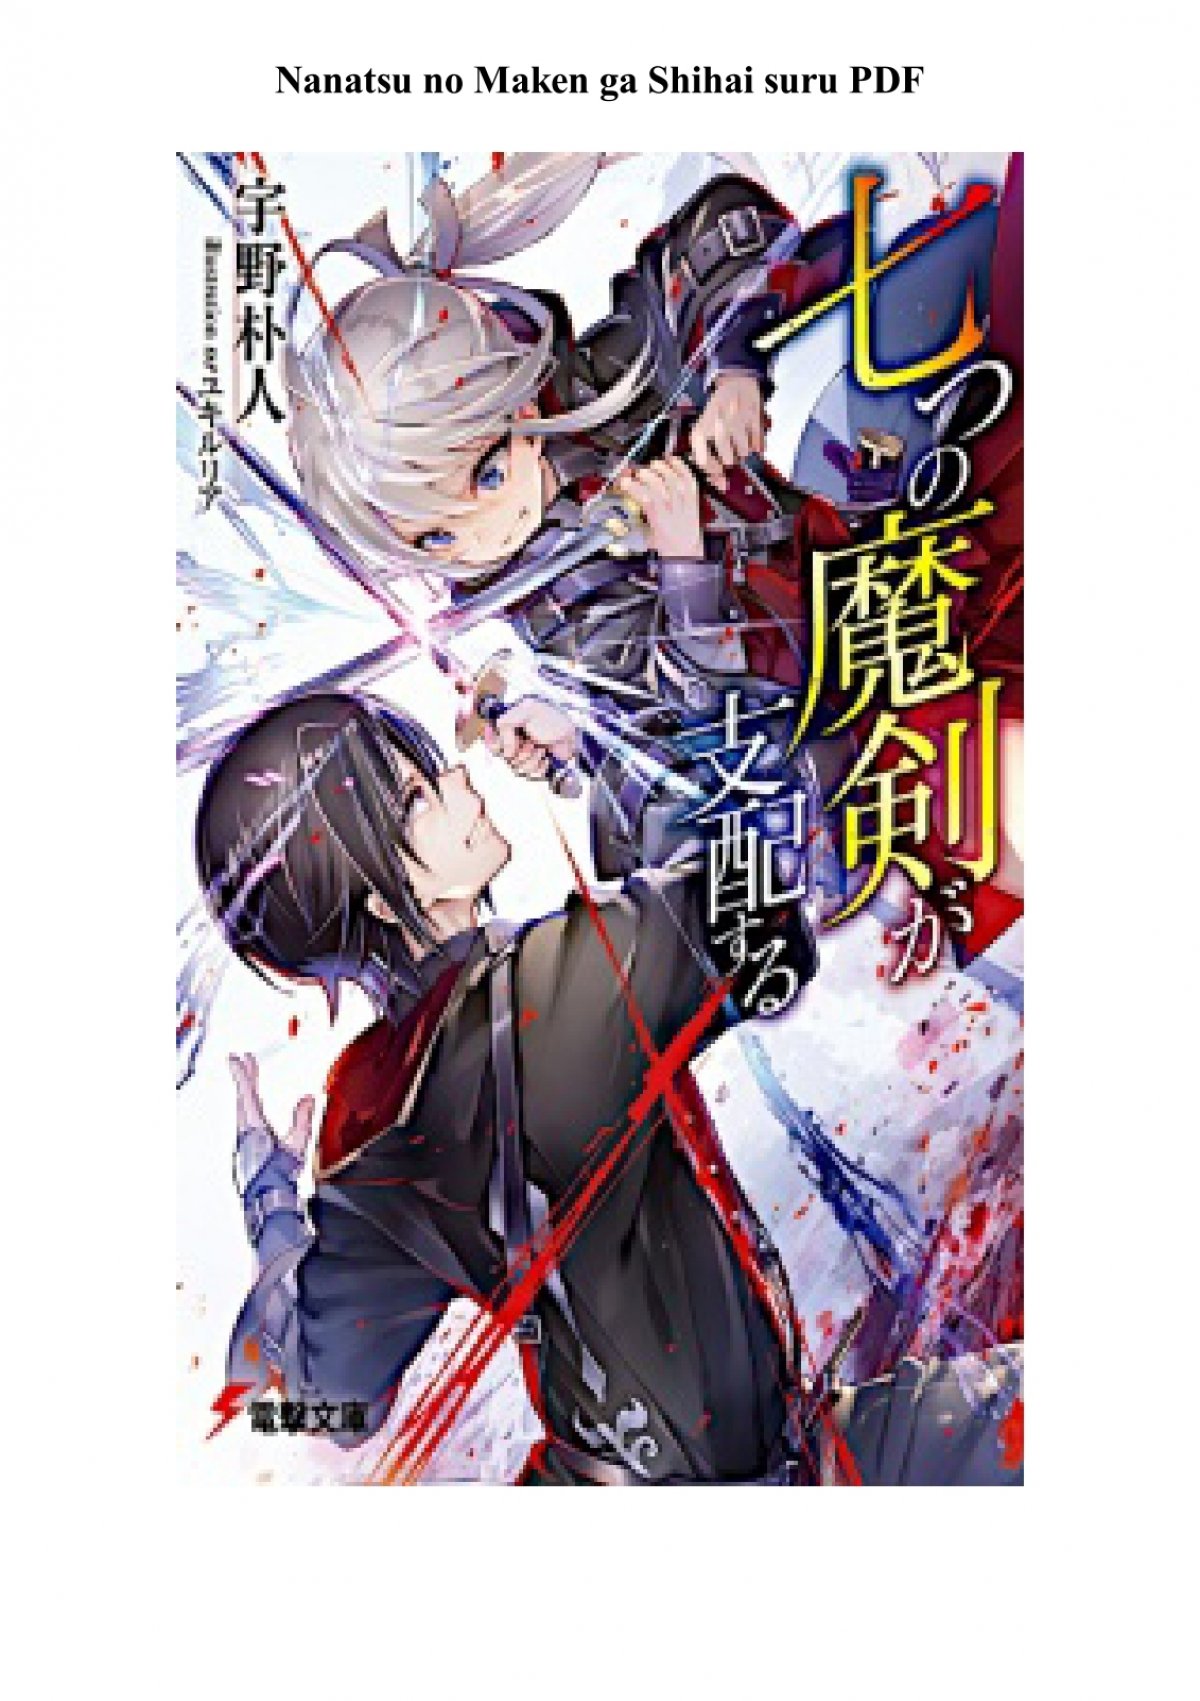 Nanatsu no maken ga shihai suru, light novel, artwork, Anime, HD